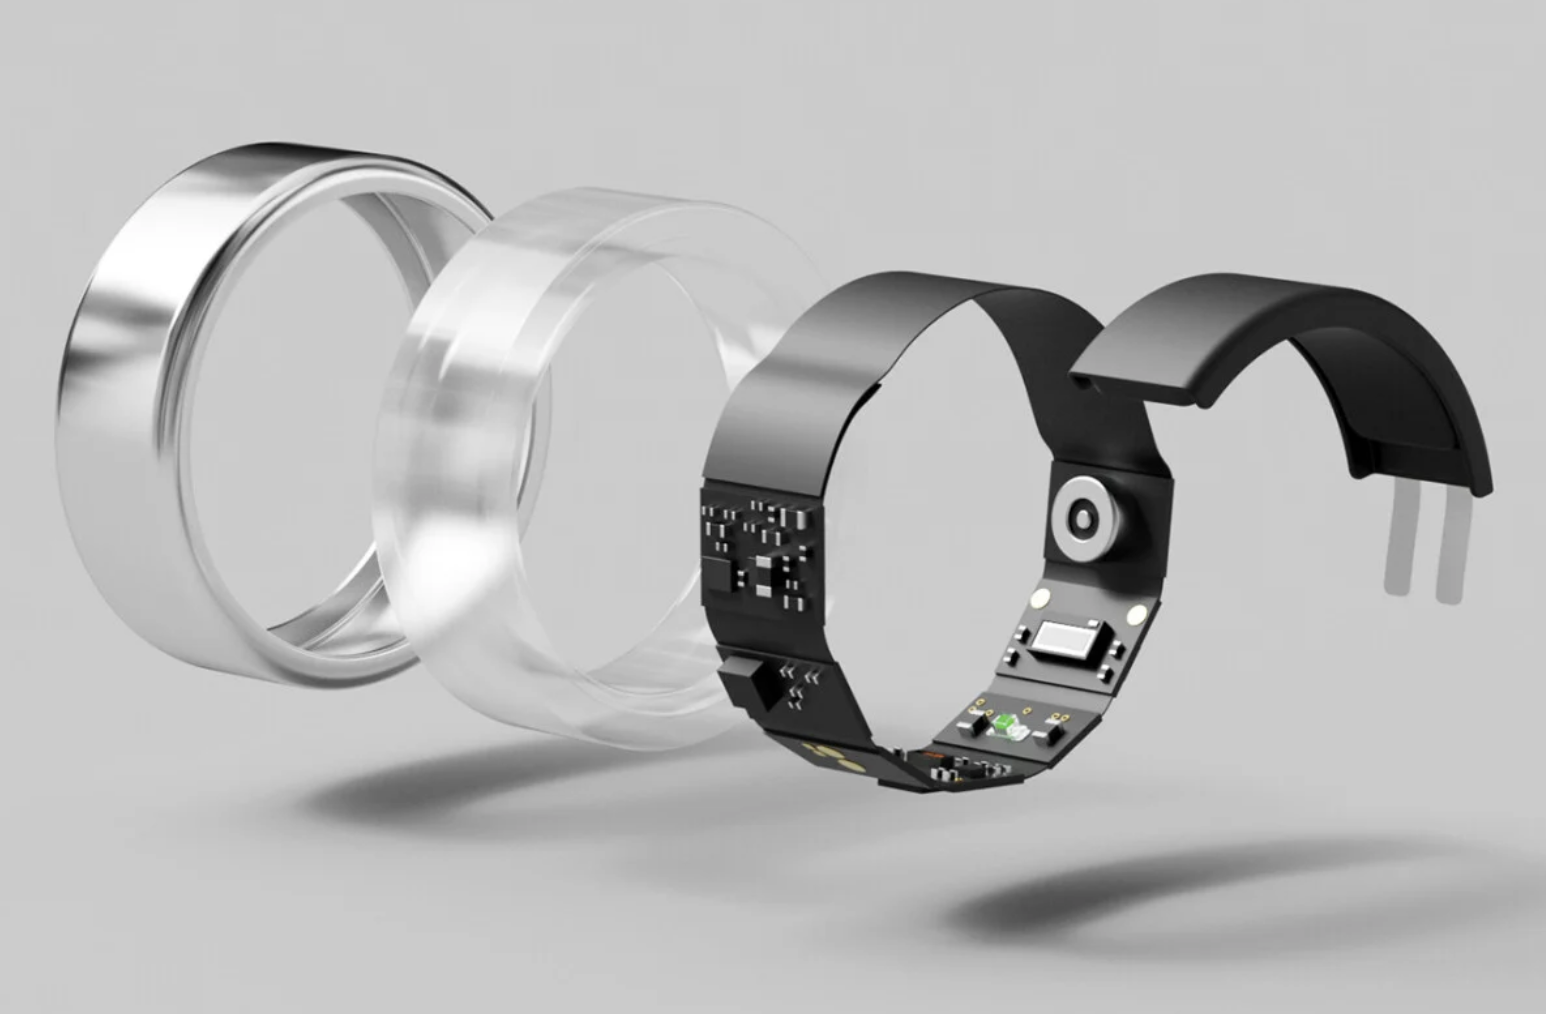 Представлено умное кольцо с датчиком сердцебиения и уровня кислорода в крови по цене смартфона